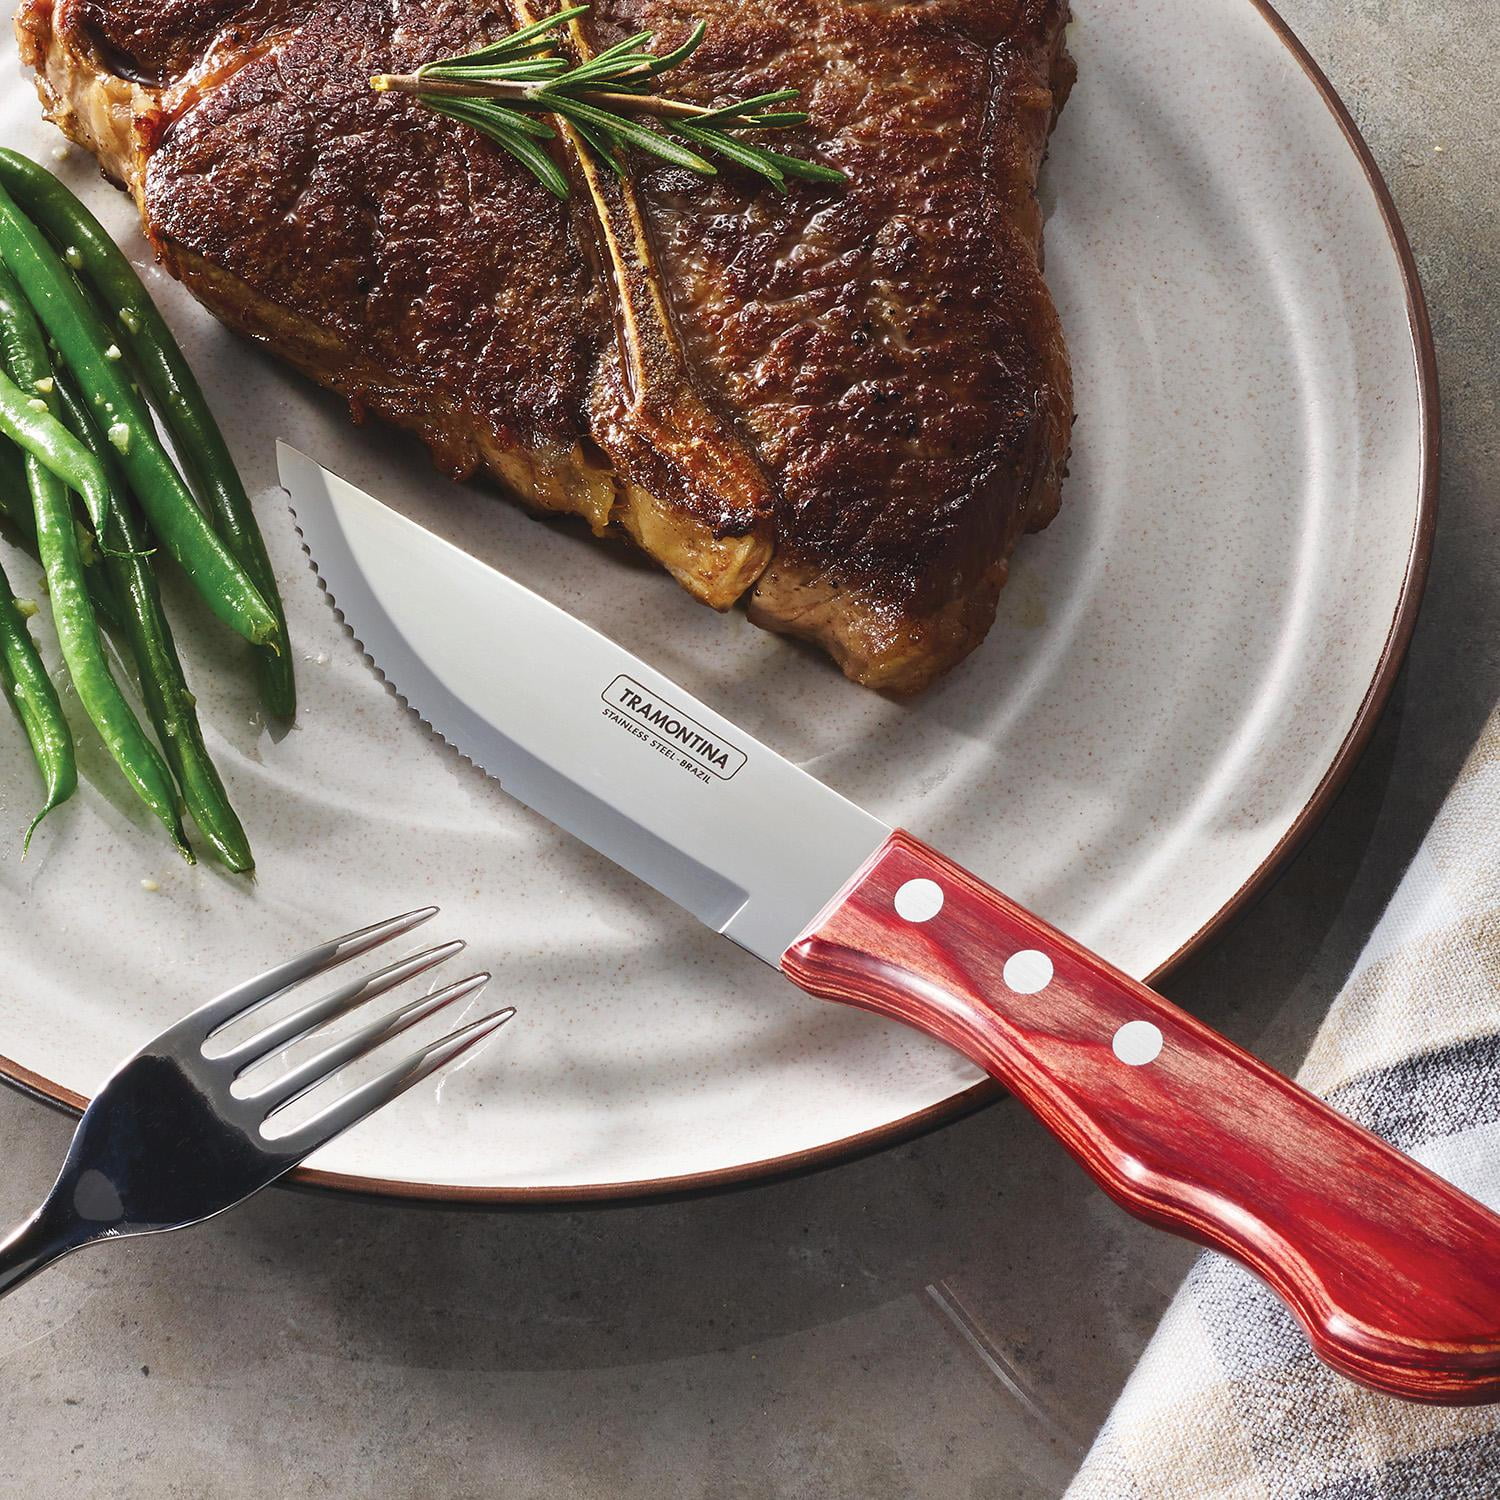  Amorston Steak Knives, Steak Knives Set of 8